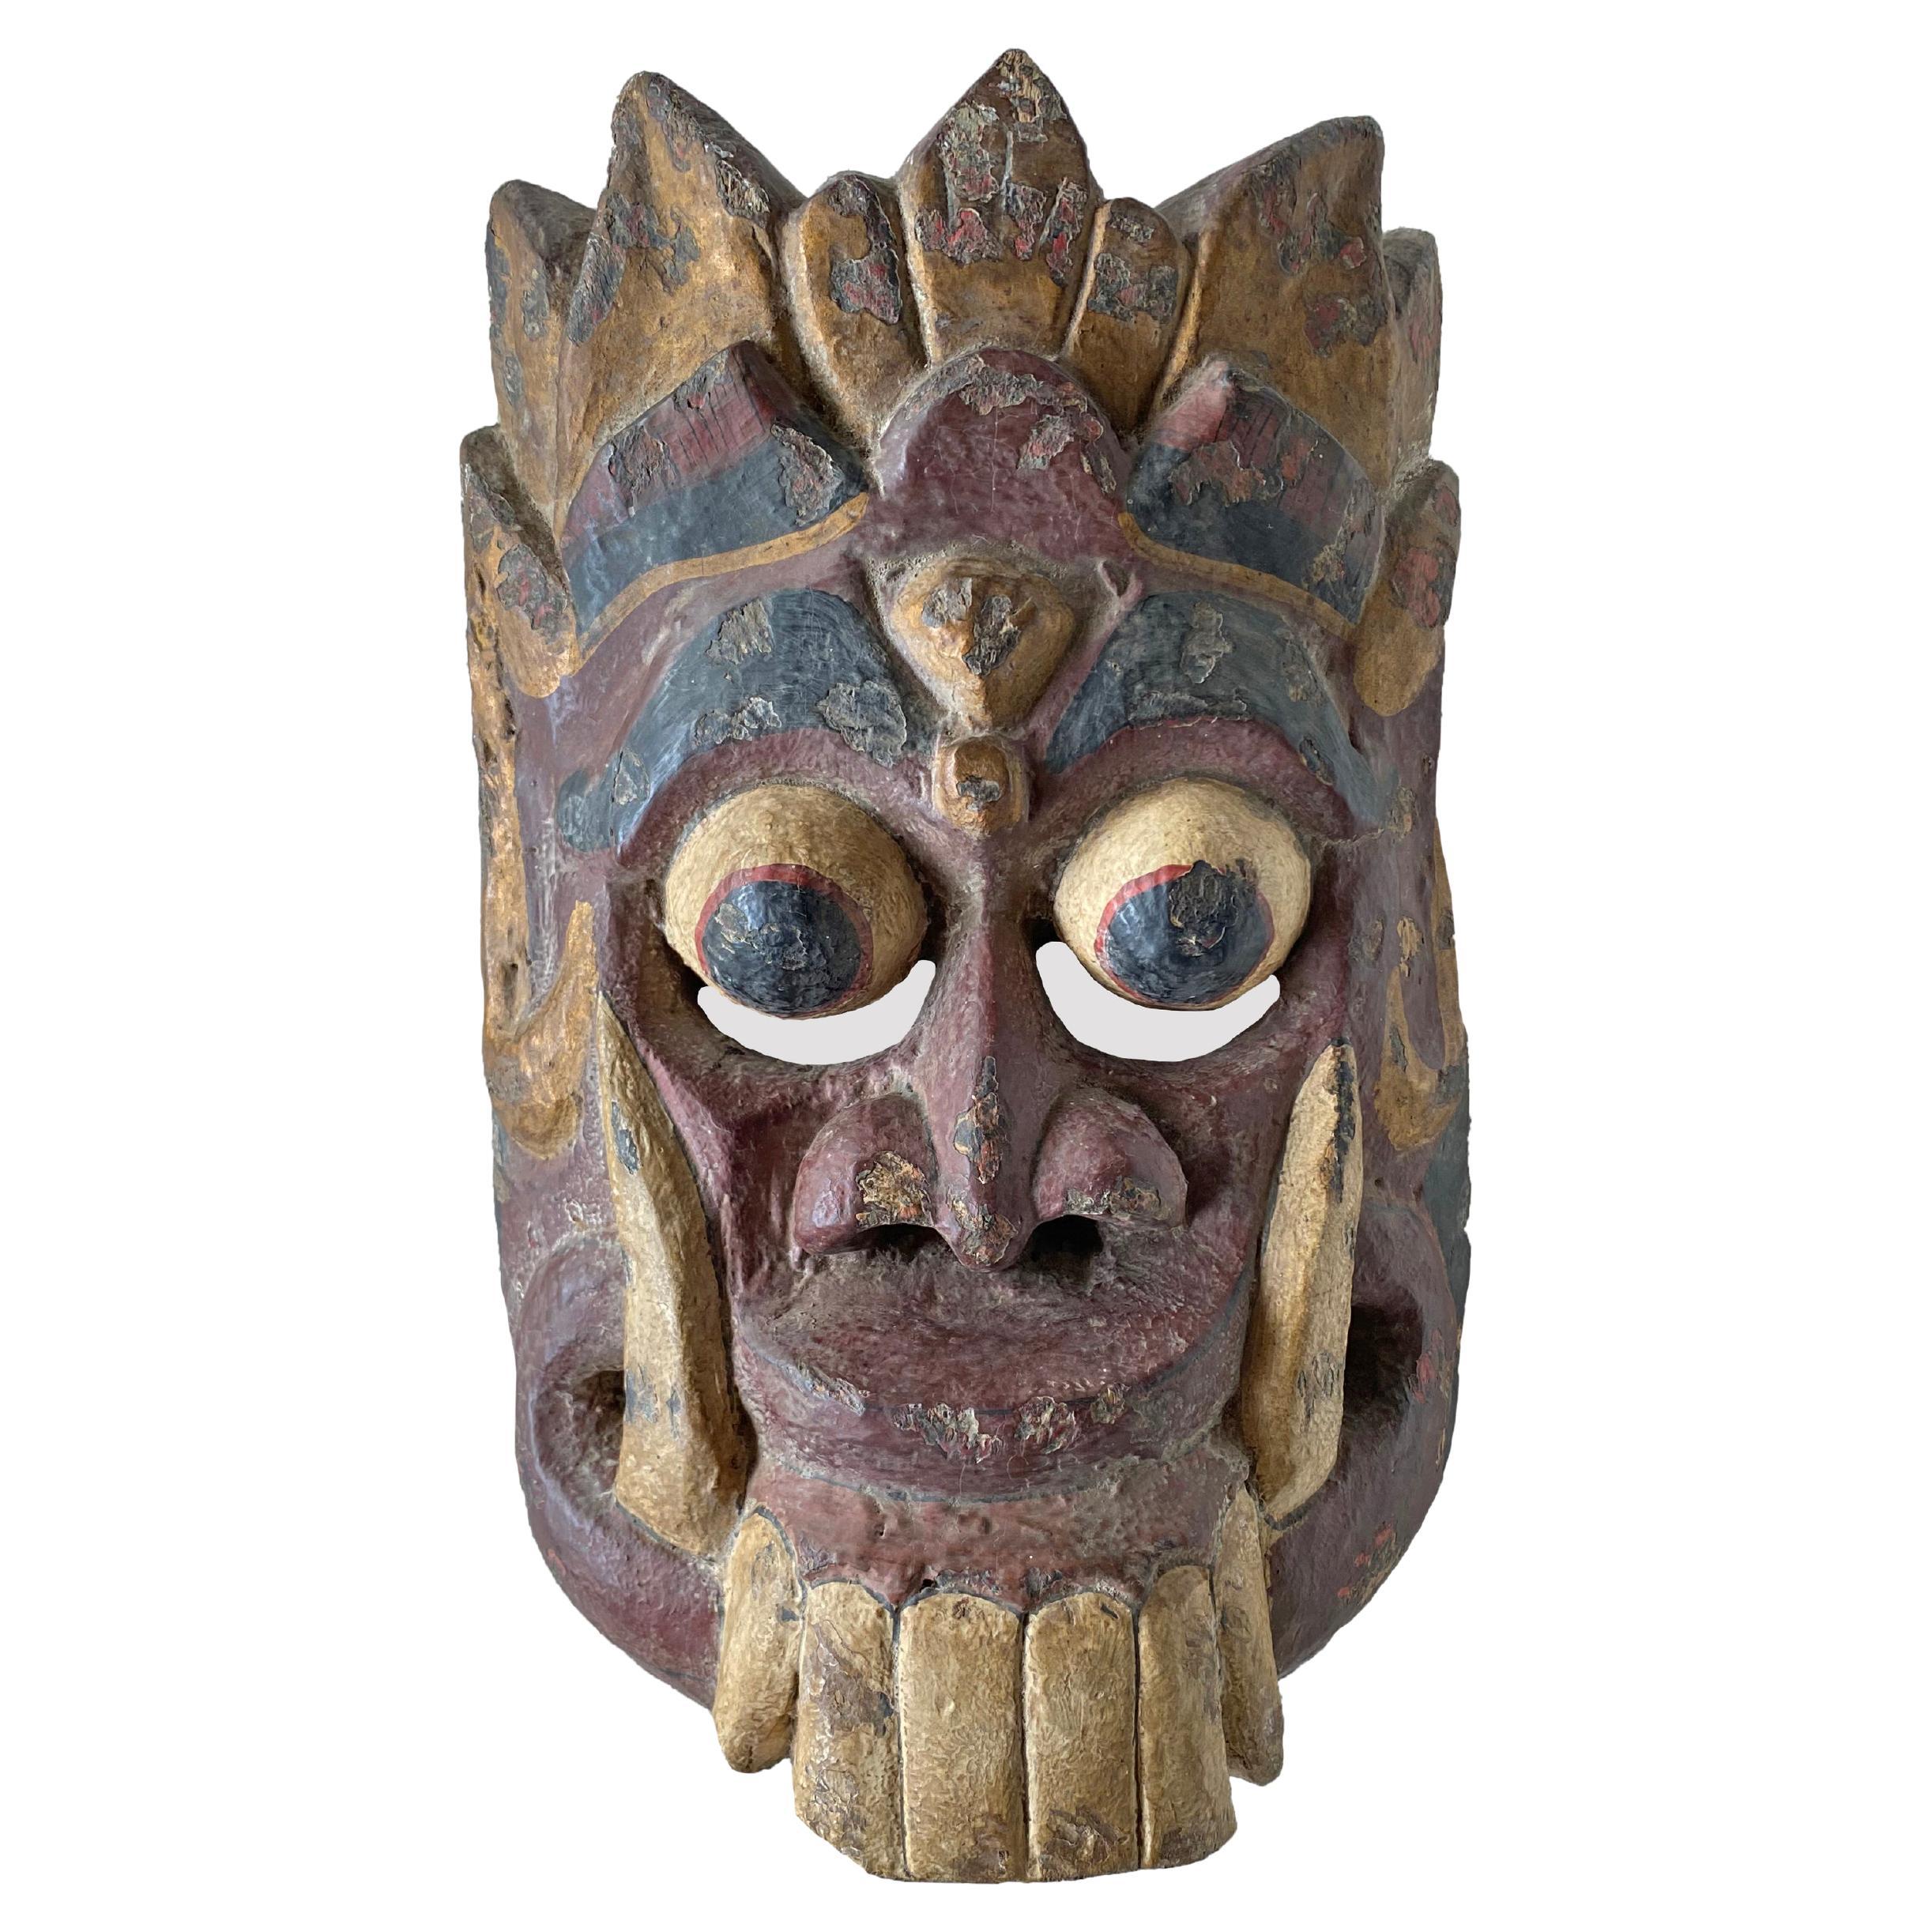 Masque balinais sculpté à la main représentant la reine démocratique « Rangda » mythologique, vers 1900